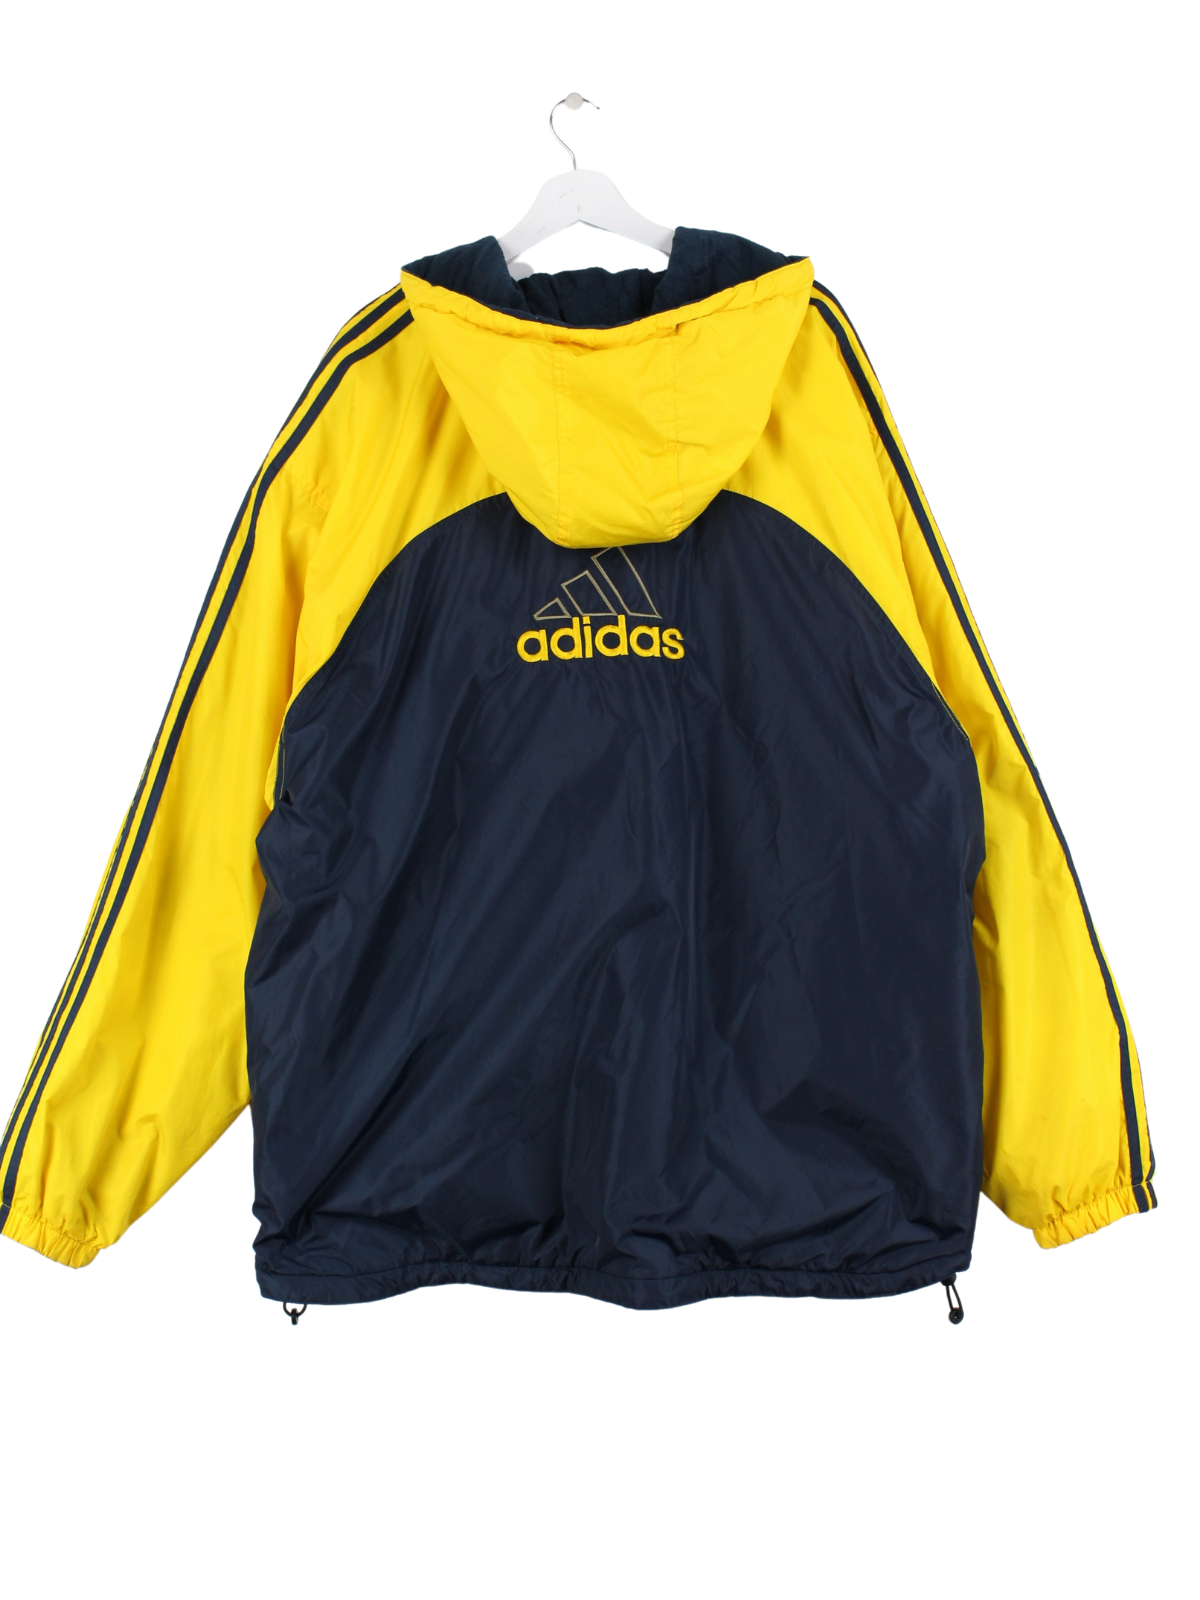 Adidas 90s Jacke Schwarz / Gelb XXL